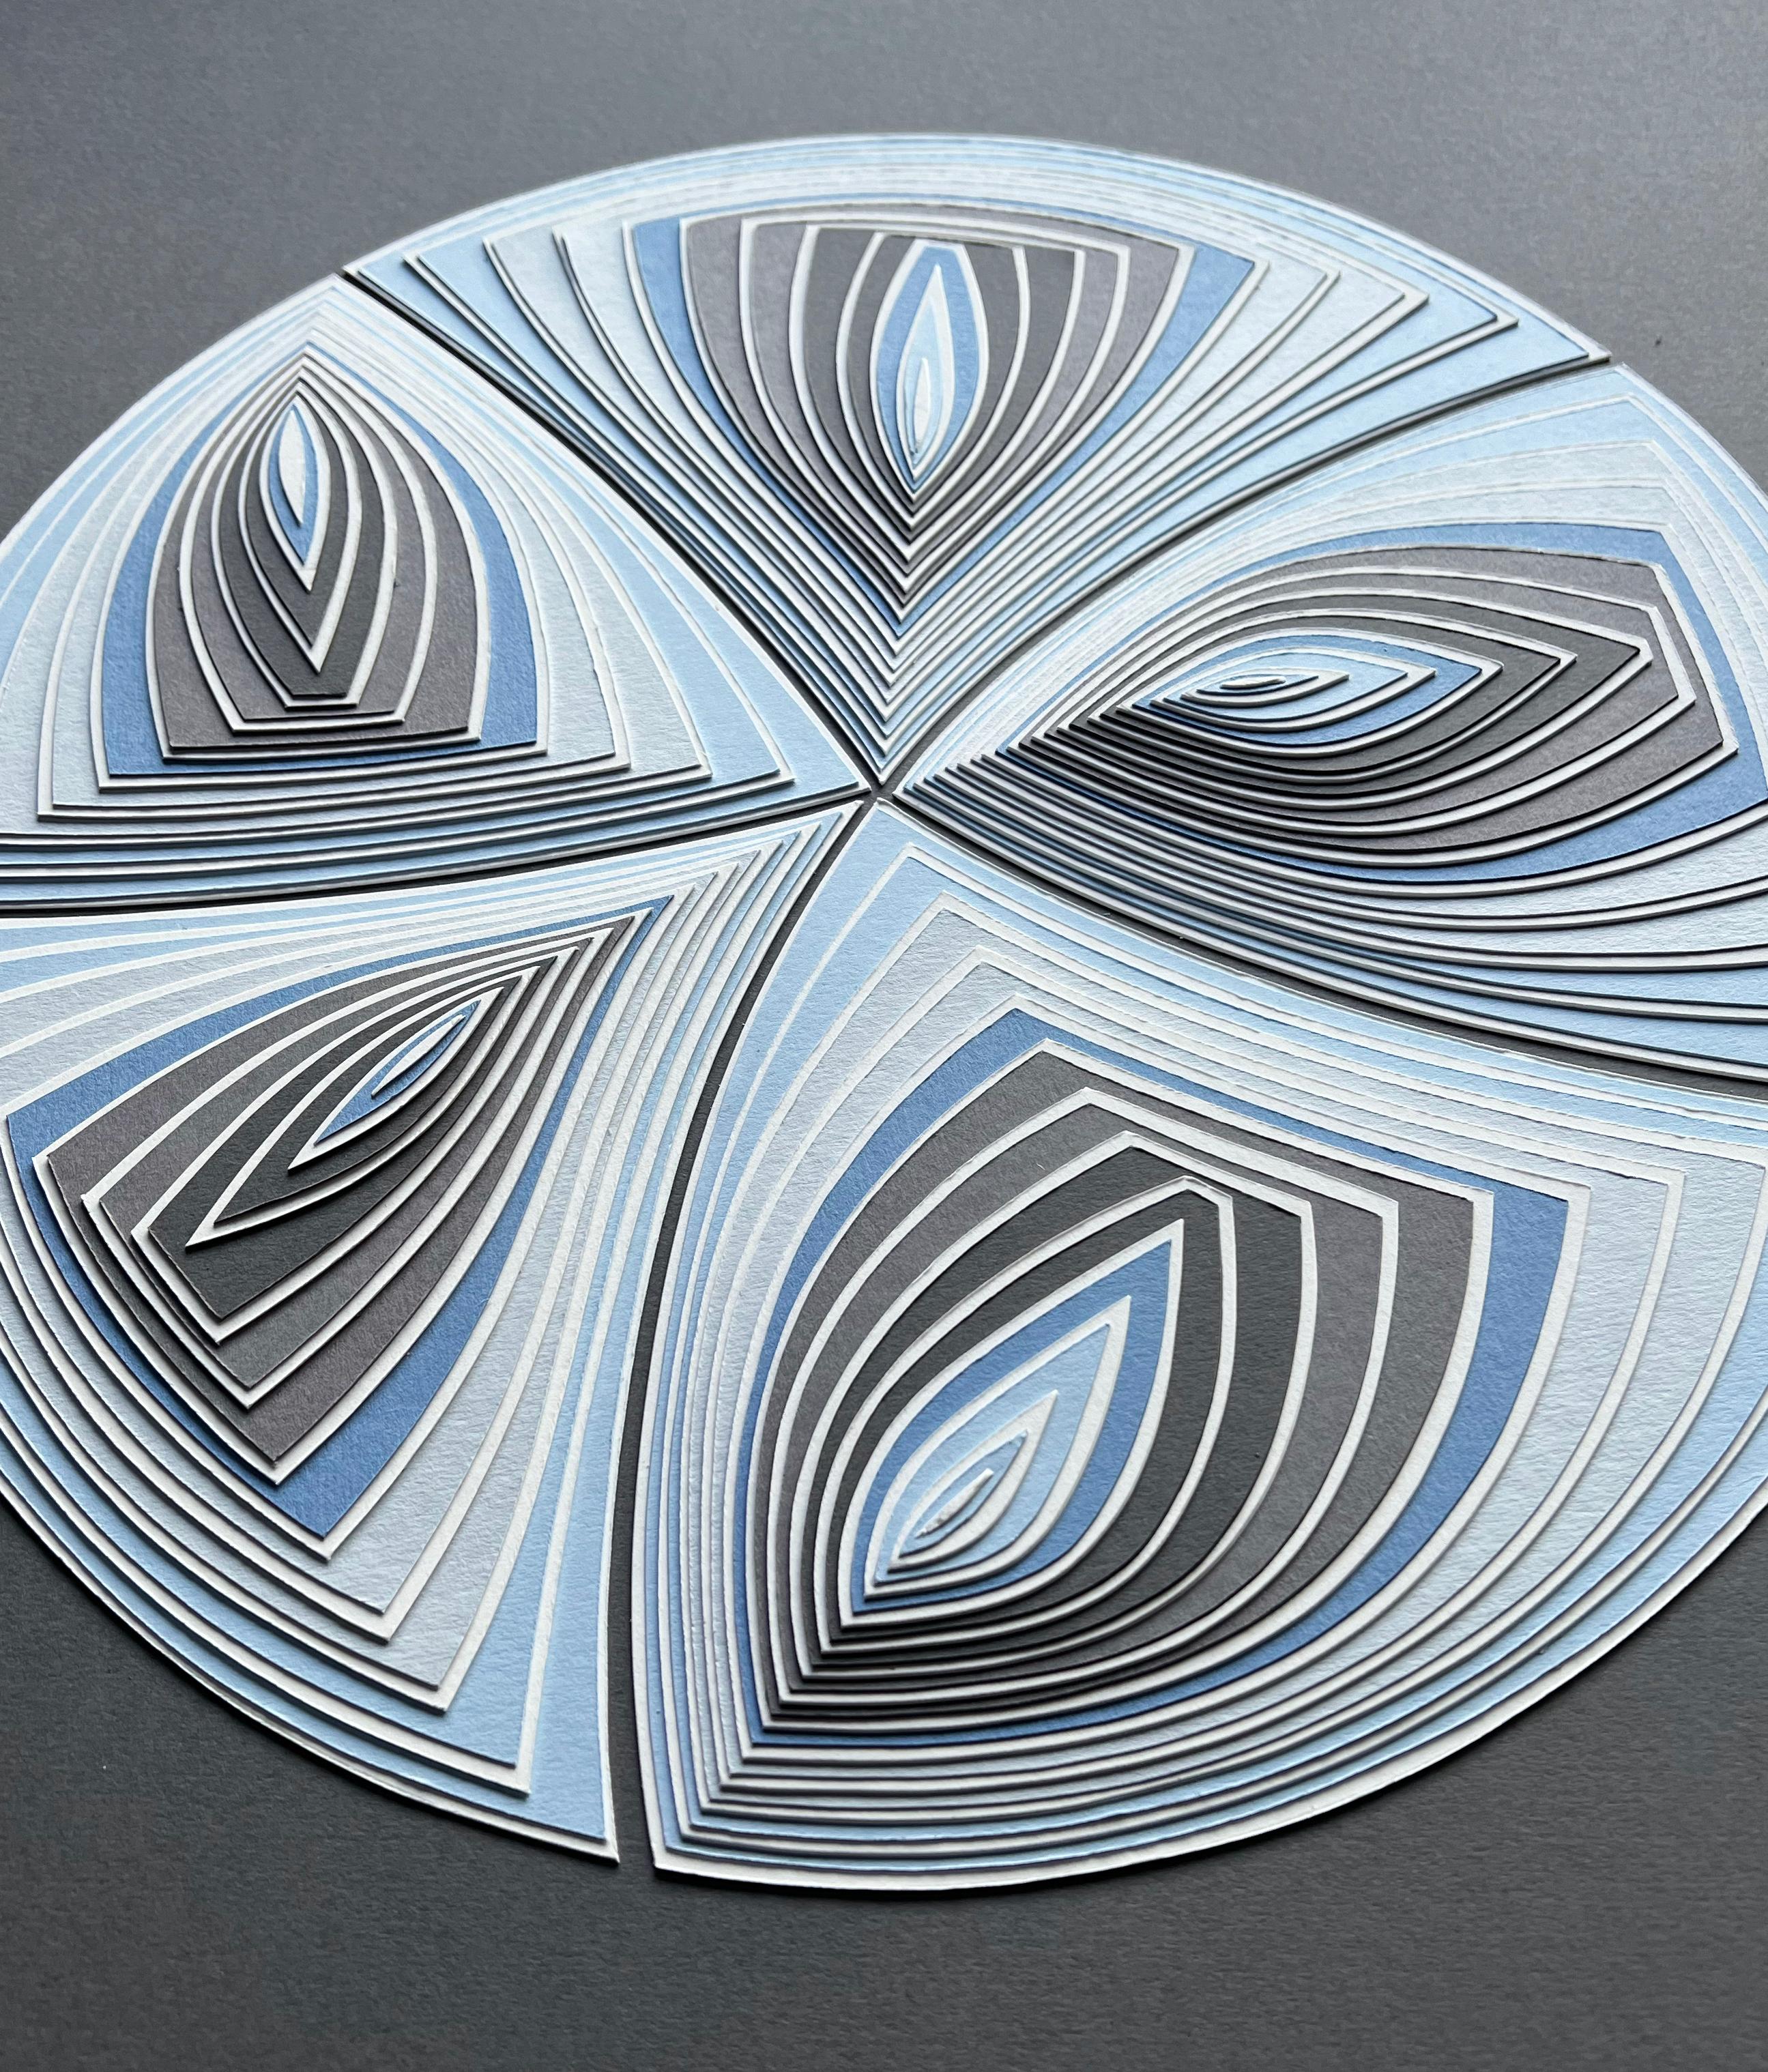 Cut Work: „Blauer Taupefarbener Kreis heraus“ – Painting von Elizabeth Gregory-Gruen